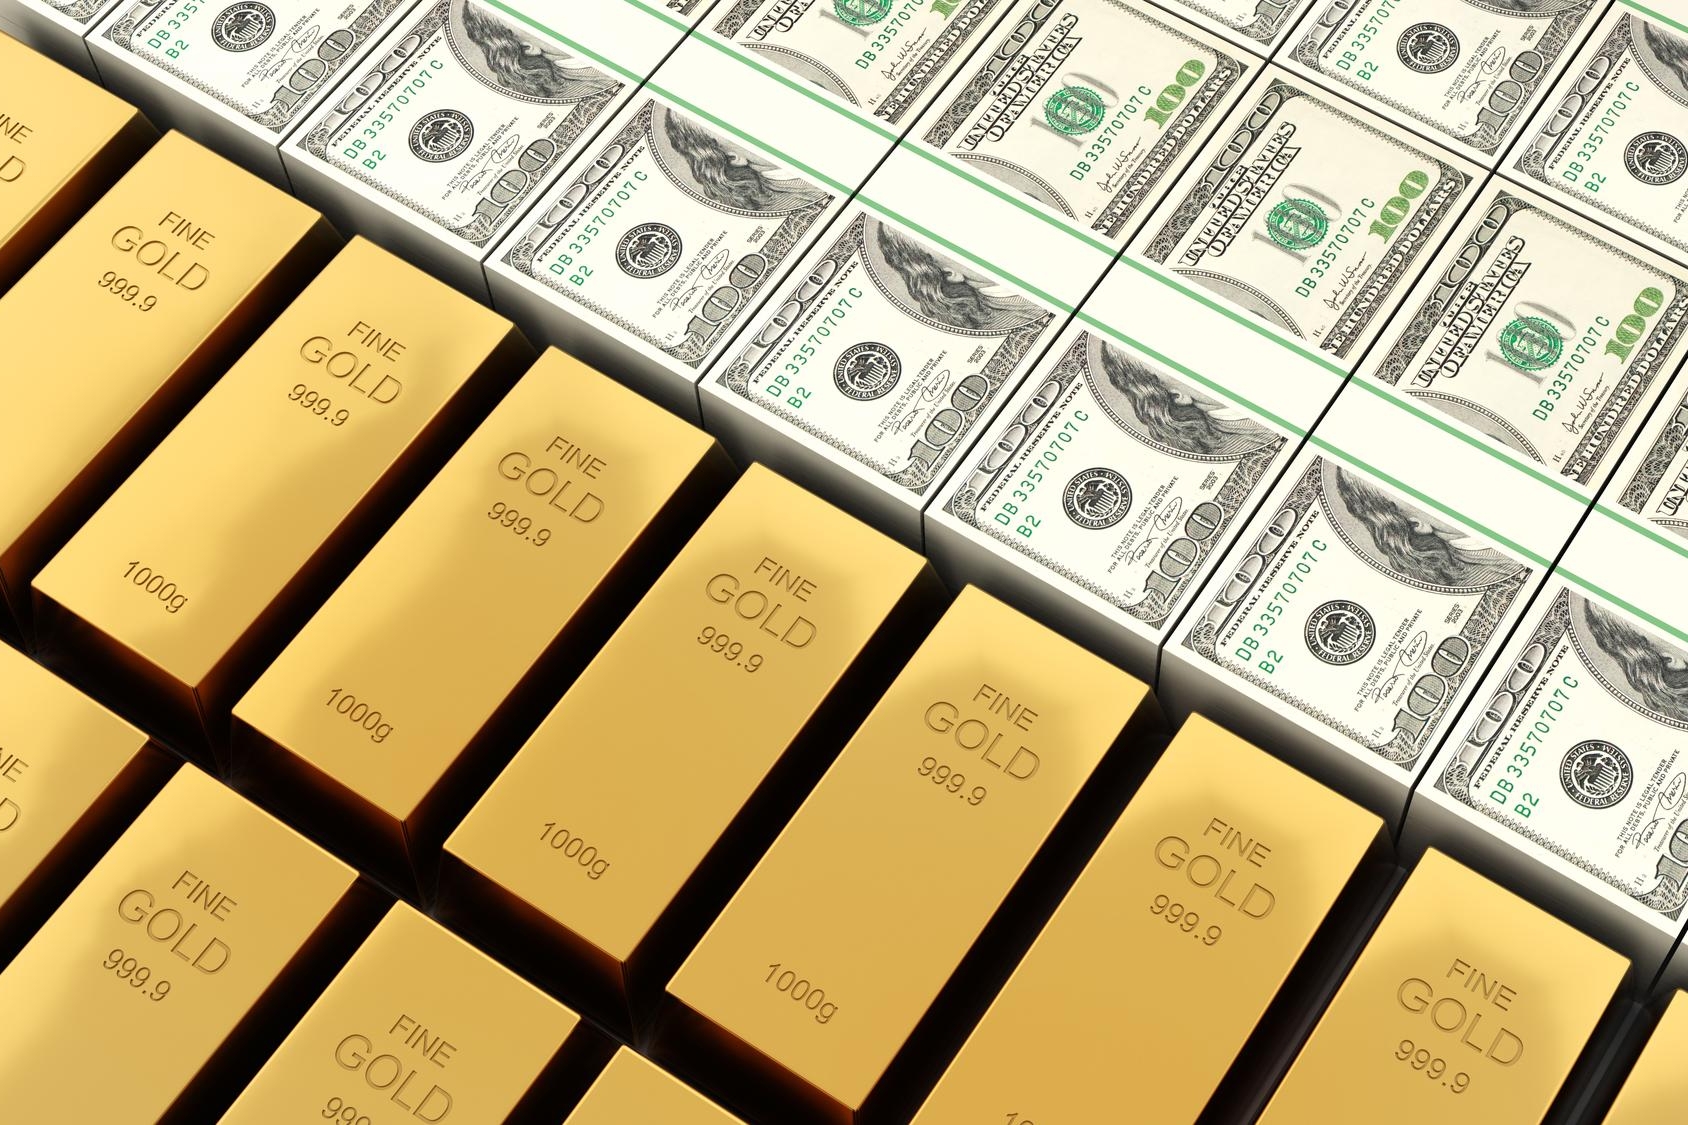 อยากลงทุนทองคำเพิ่มในพอร์ต ต้องคาดการณ์ราคาทองอย่างไร